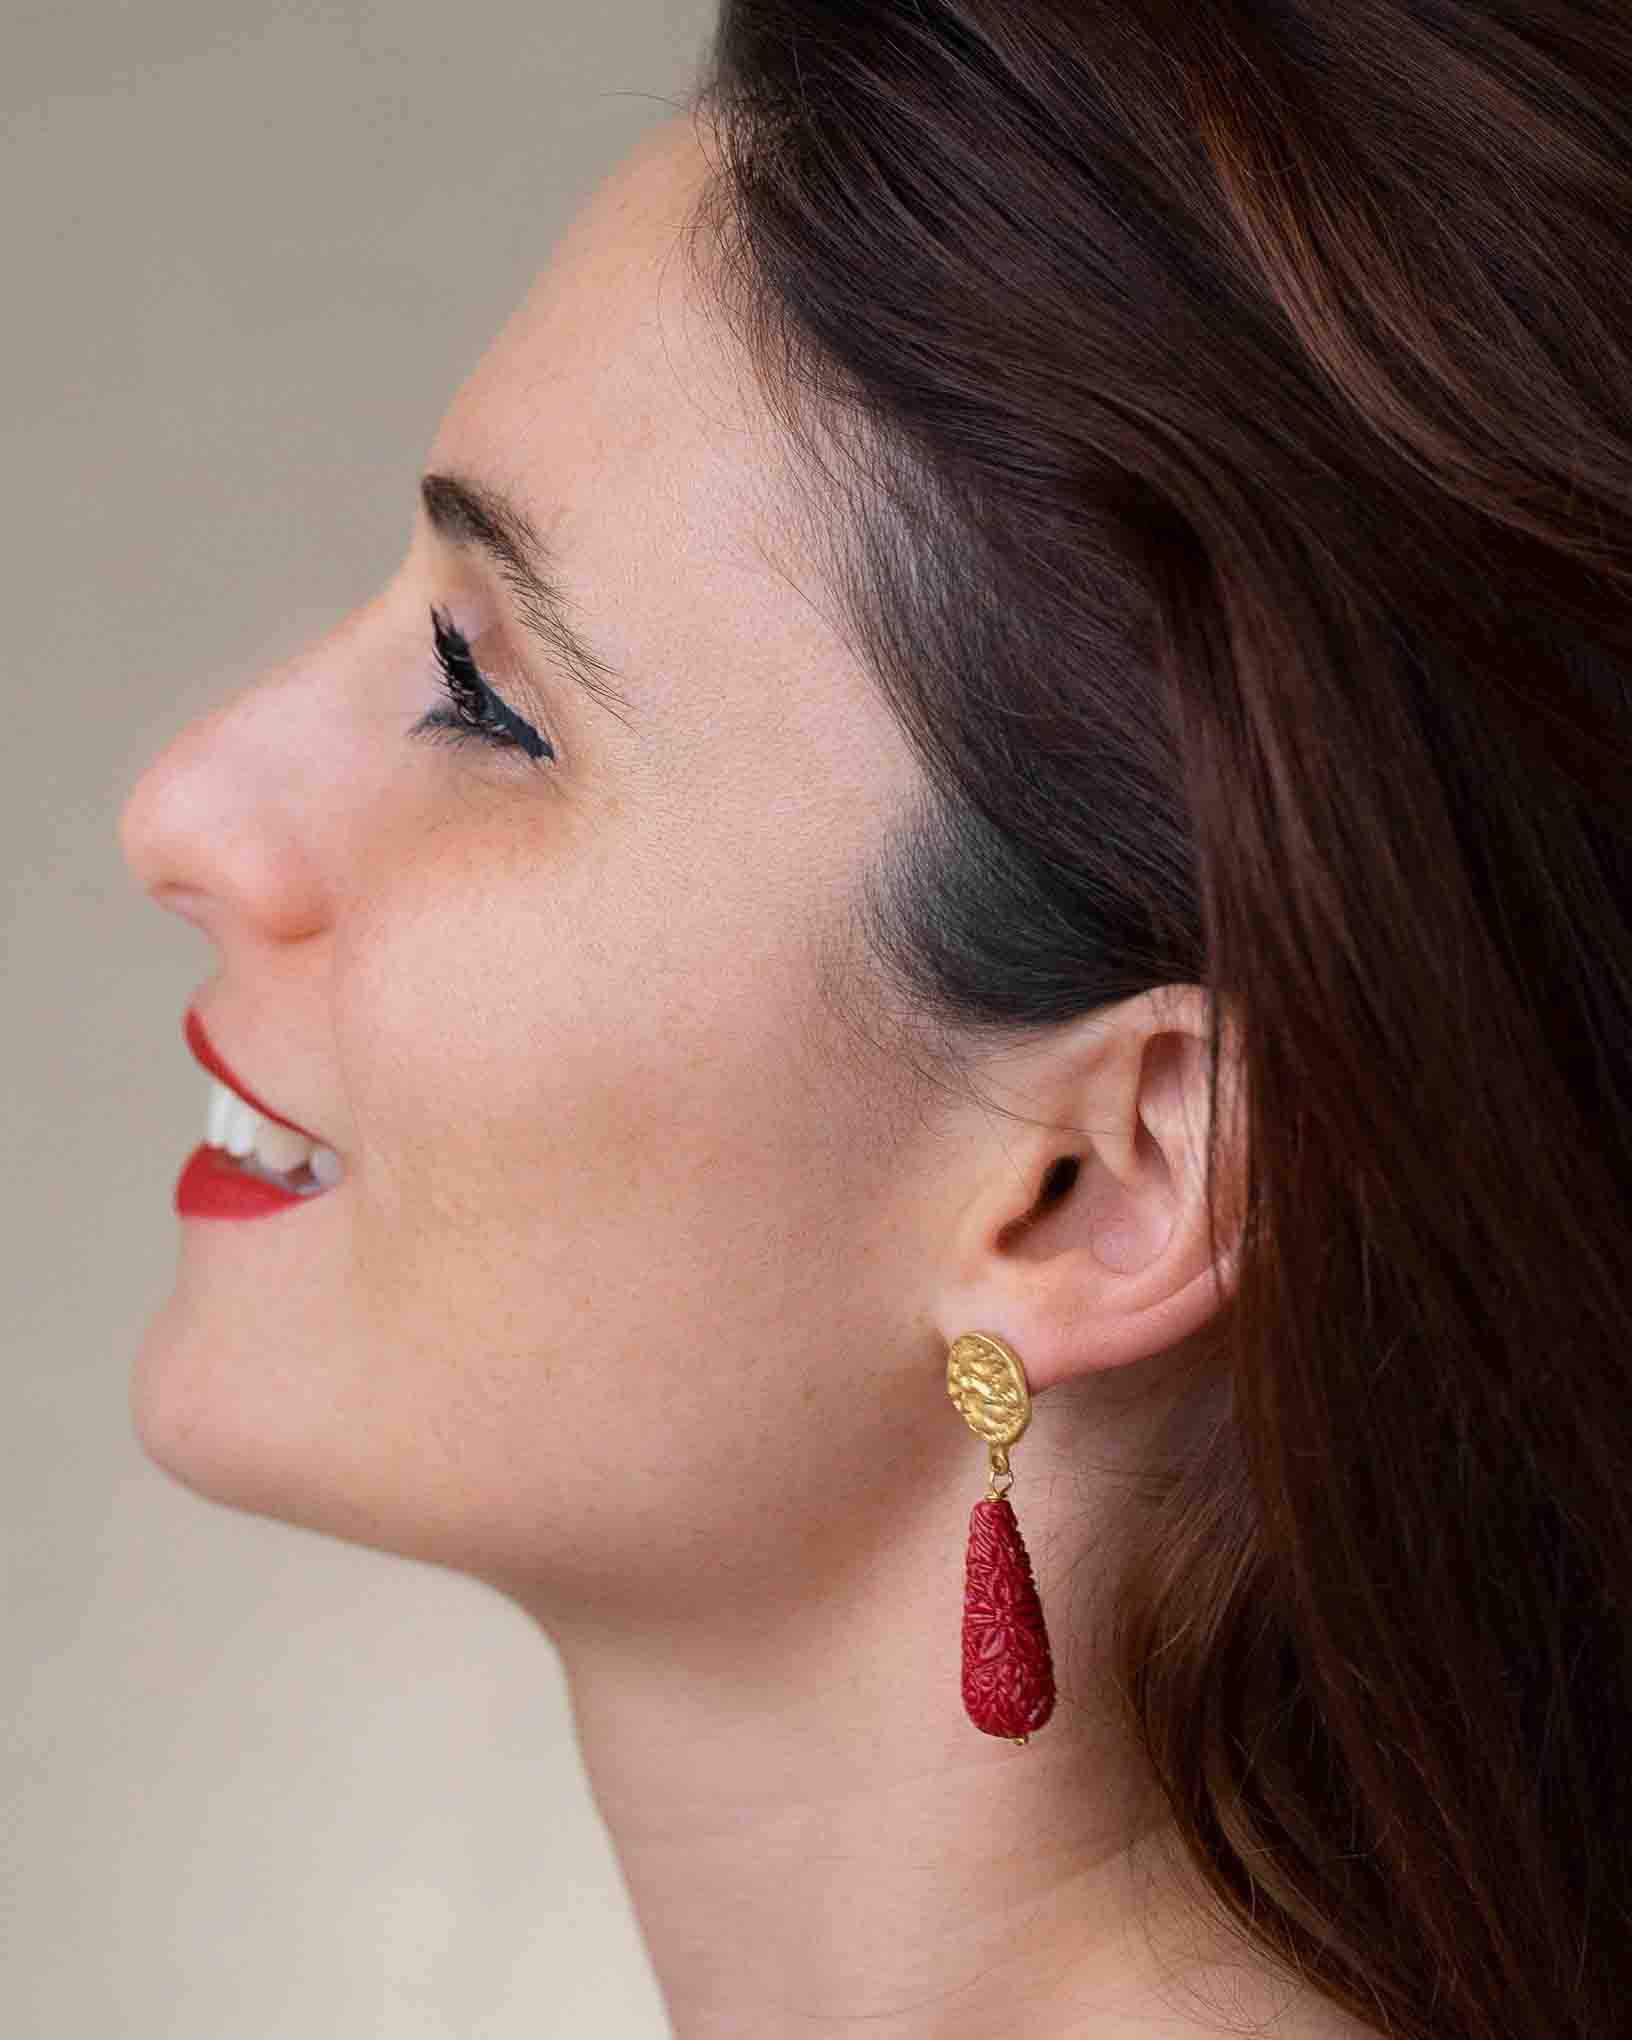 Ohrring Donna Silvana aus der Kollektion Donna di Classe von Donna Rachele Jewelry